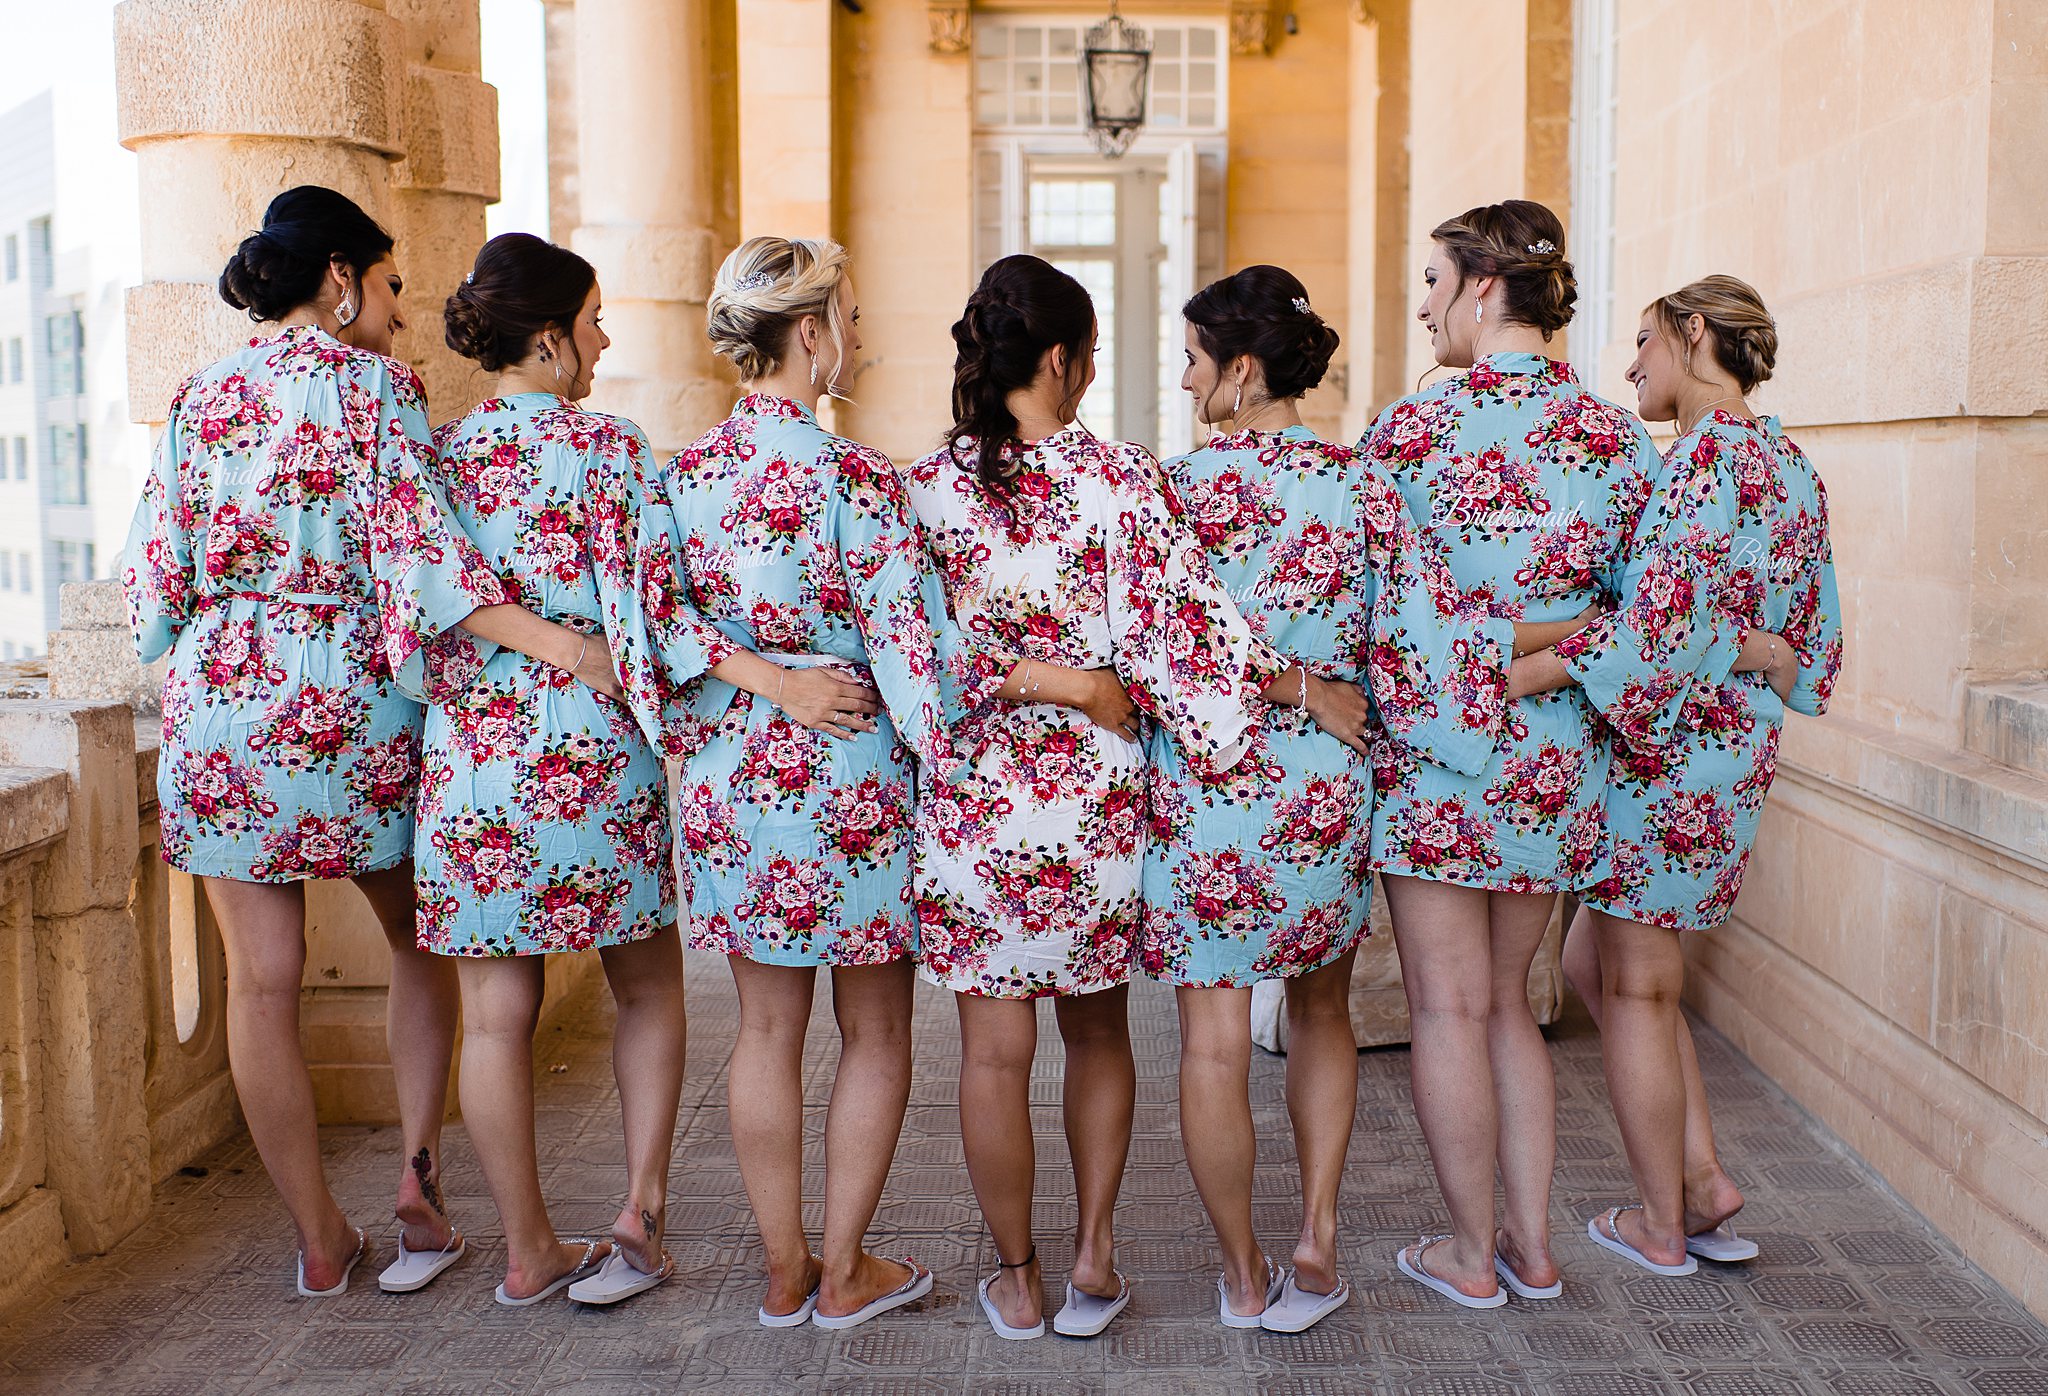 Hannah & Taif | Palazzo Villa Rosa & Razzett L'Abjad | Wedding Photography Malta by Shane P. Watts